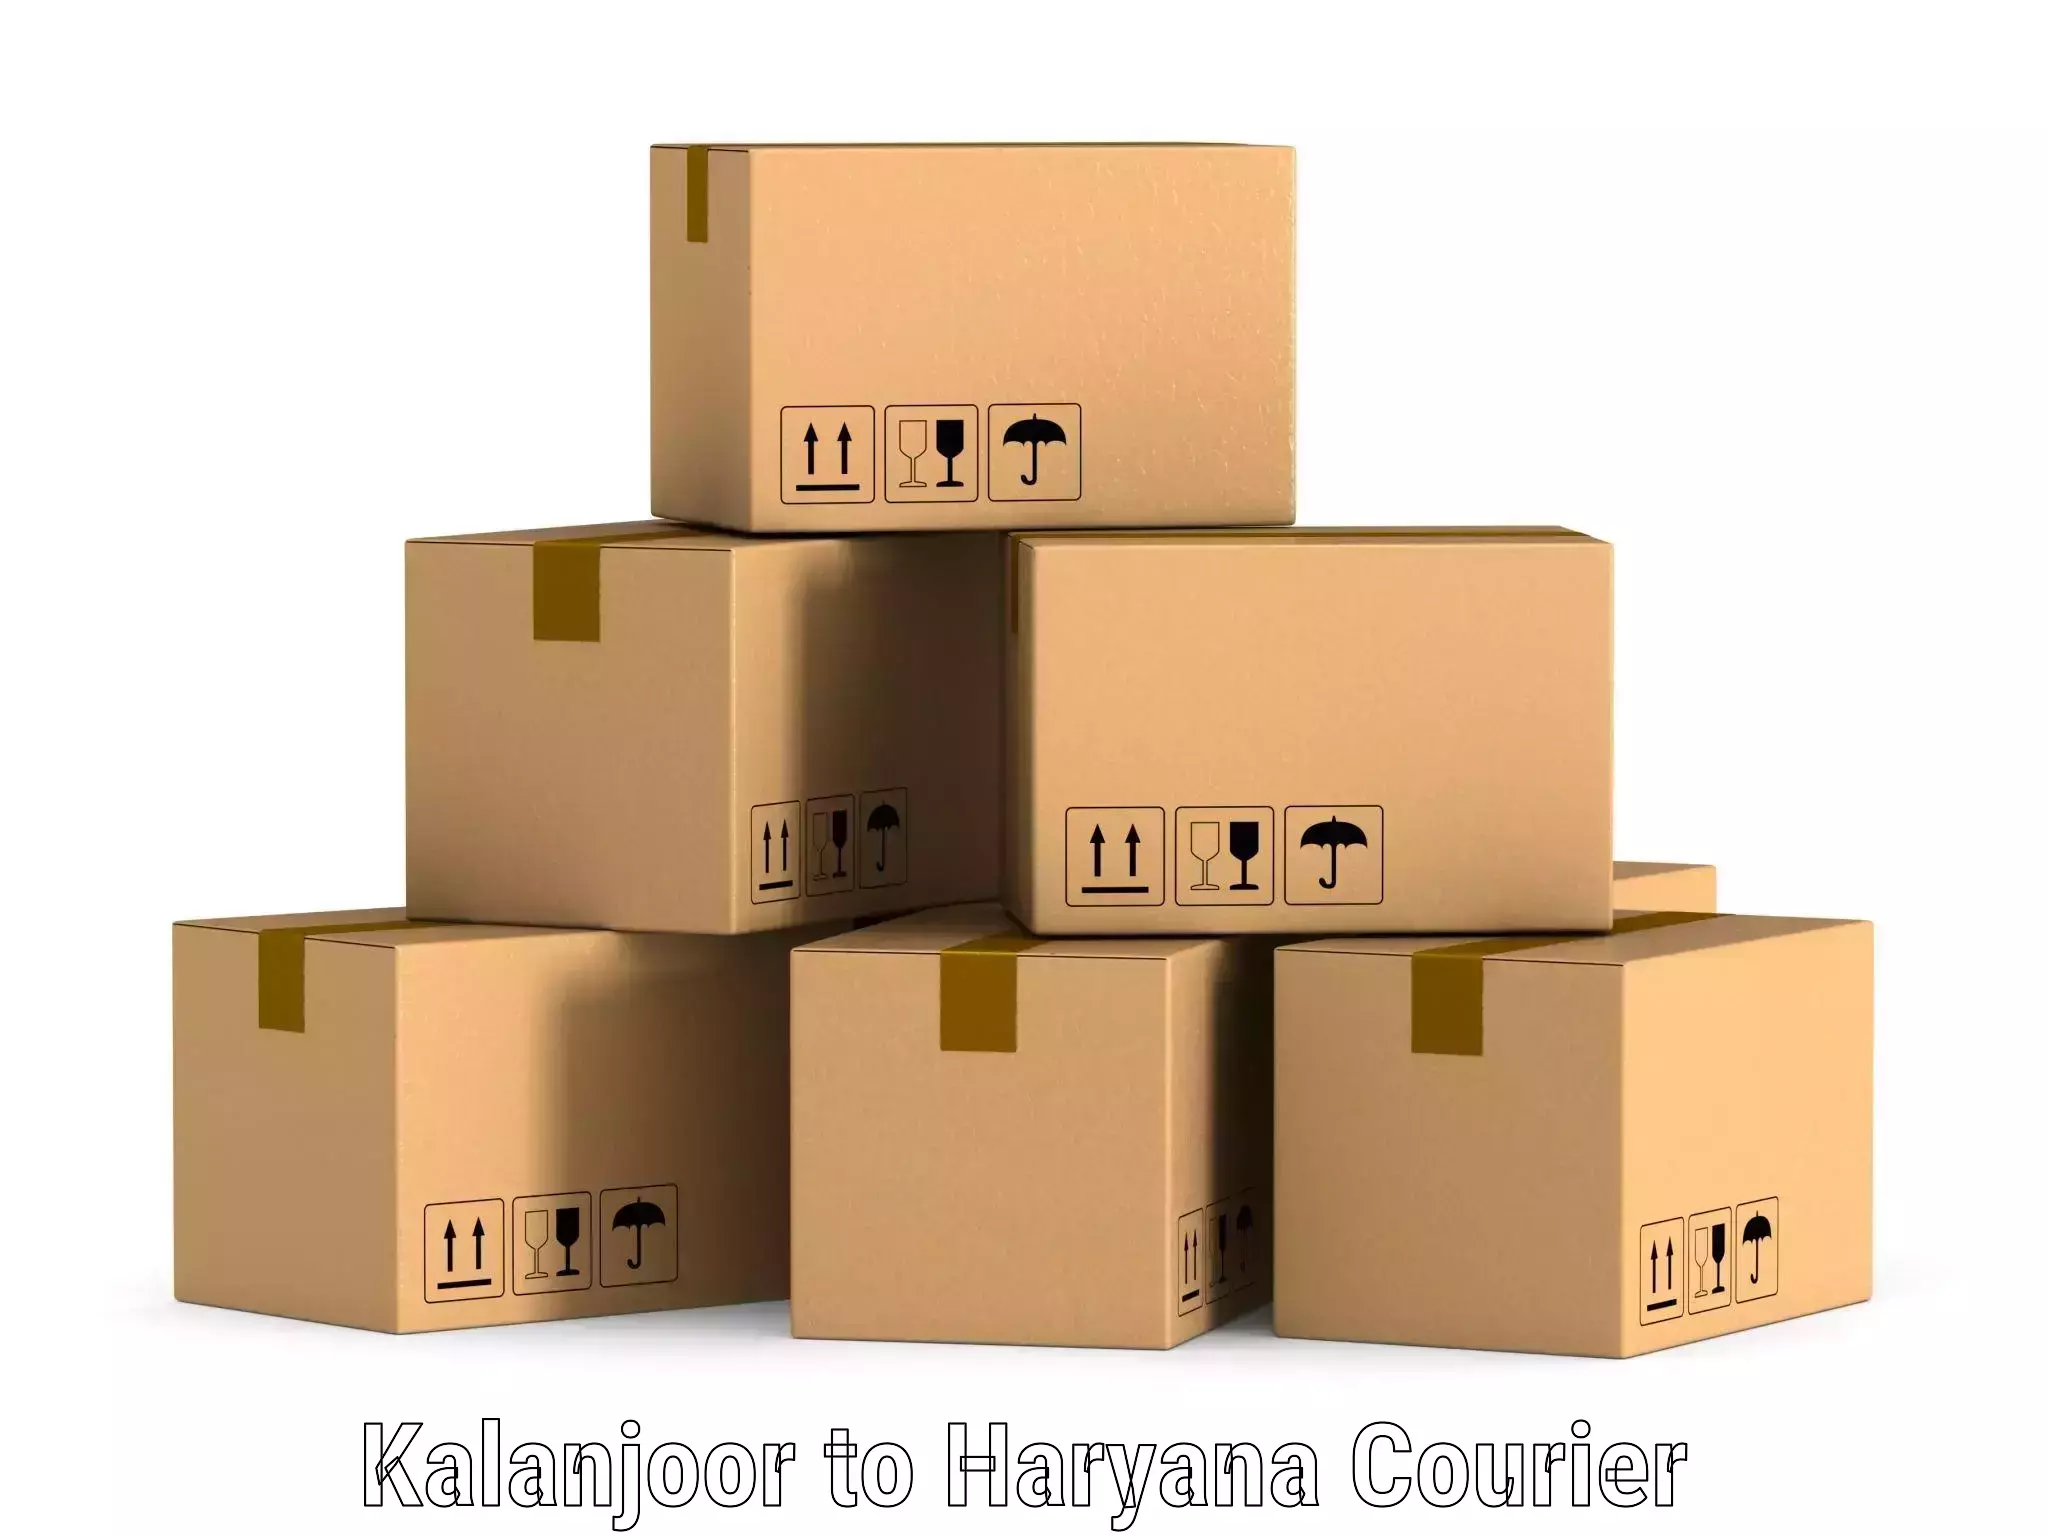 Efficient logistics management Kalanjoor to NCR Haryana